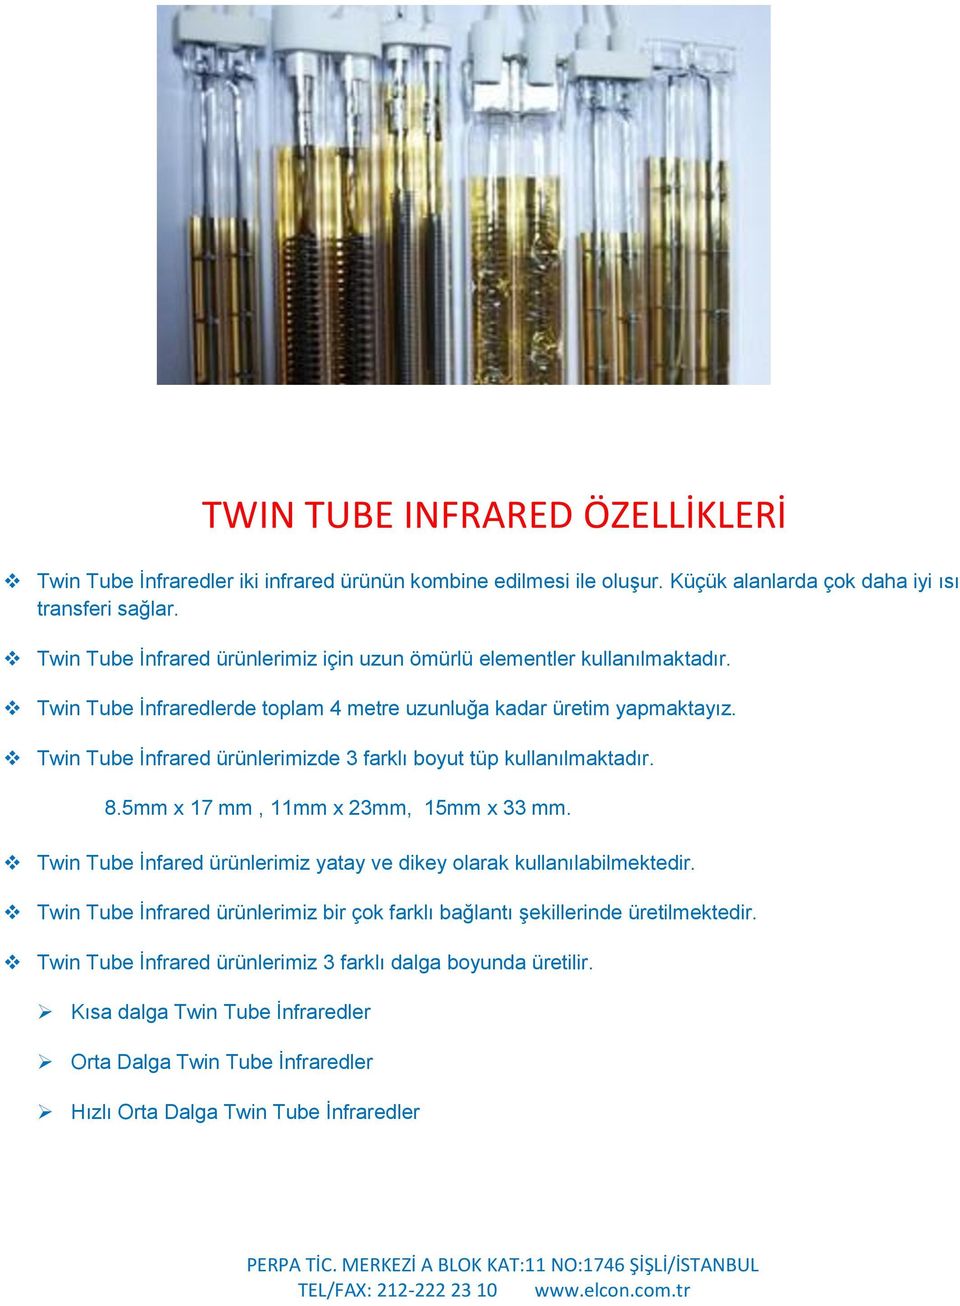 Twin Tube İnfrared ürünlerimizde 3 farklı boyut tüp kullanılmaktadır. 8.5mm x 17 mm, 11mm x 23mm, 15mm x 33 mm. Twin Tube İnfared ürünlerimiz yatay ve dikey olarak kullanılabilmektedir.